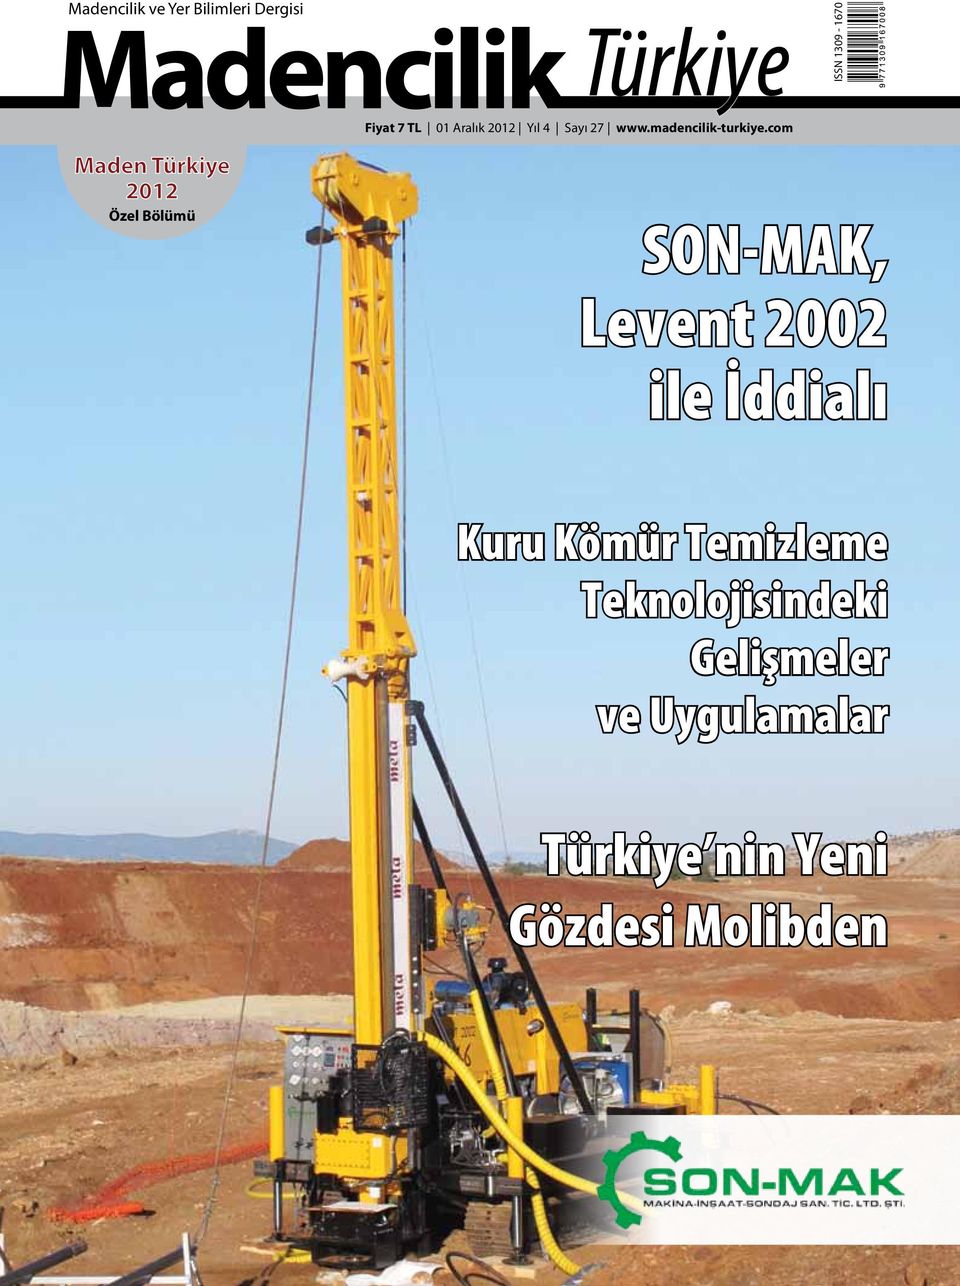 com Maden Türkiye 2012 Özel Bölümü SON-MAK, Levent 2002 ile İddialı